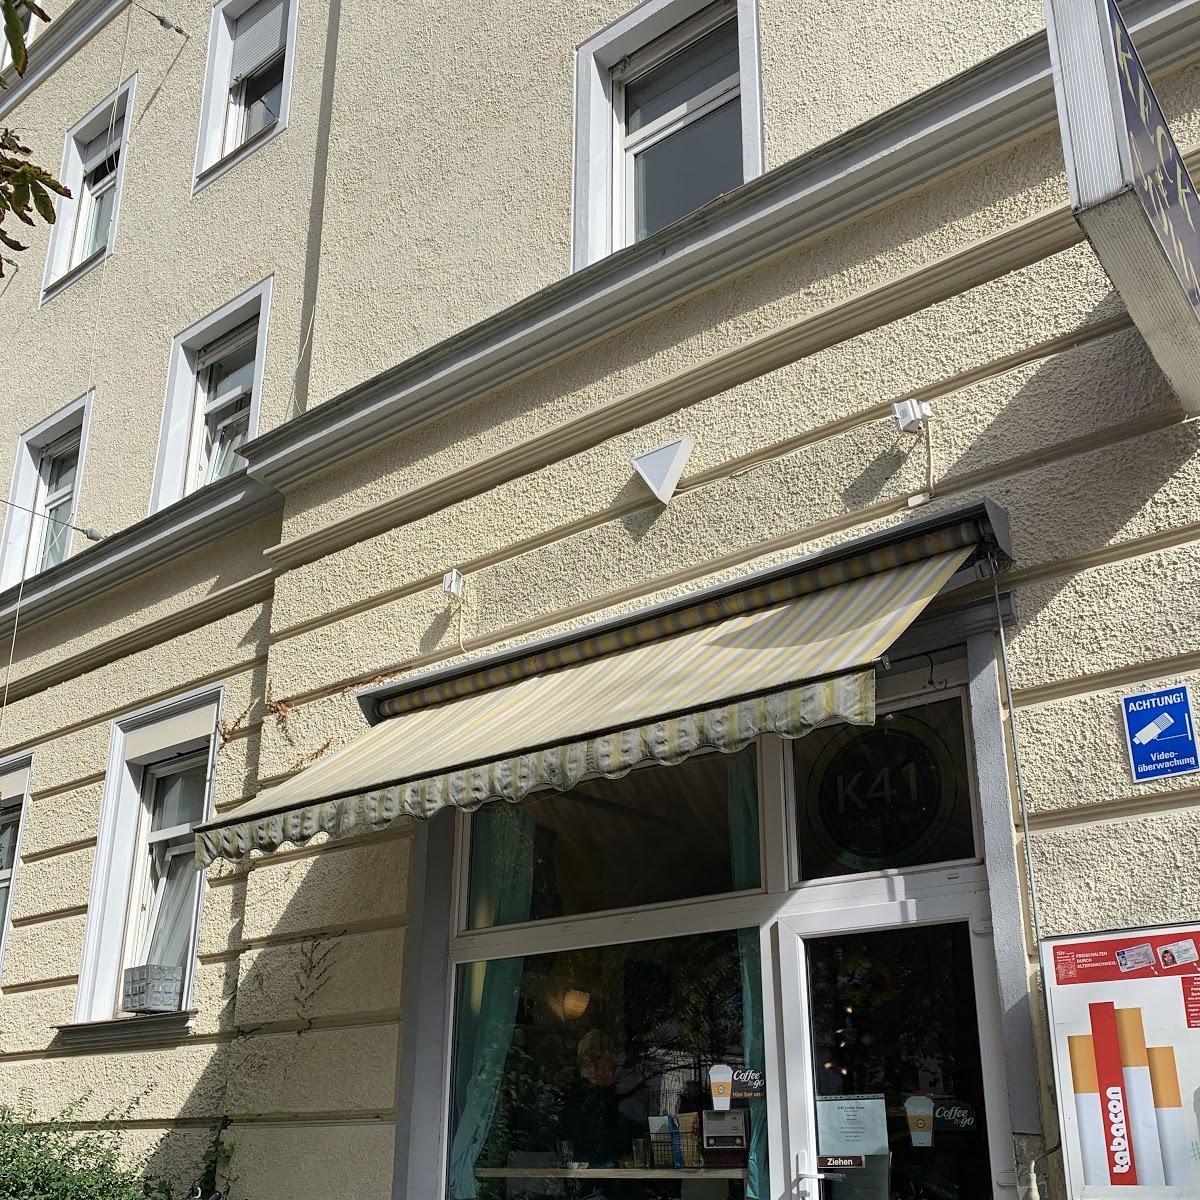 Restaurant "K 41" in  Augsburg